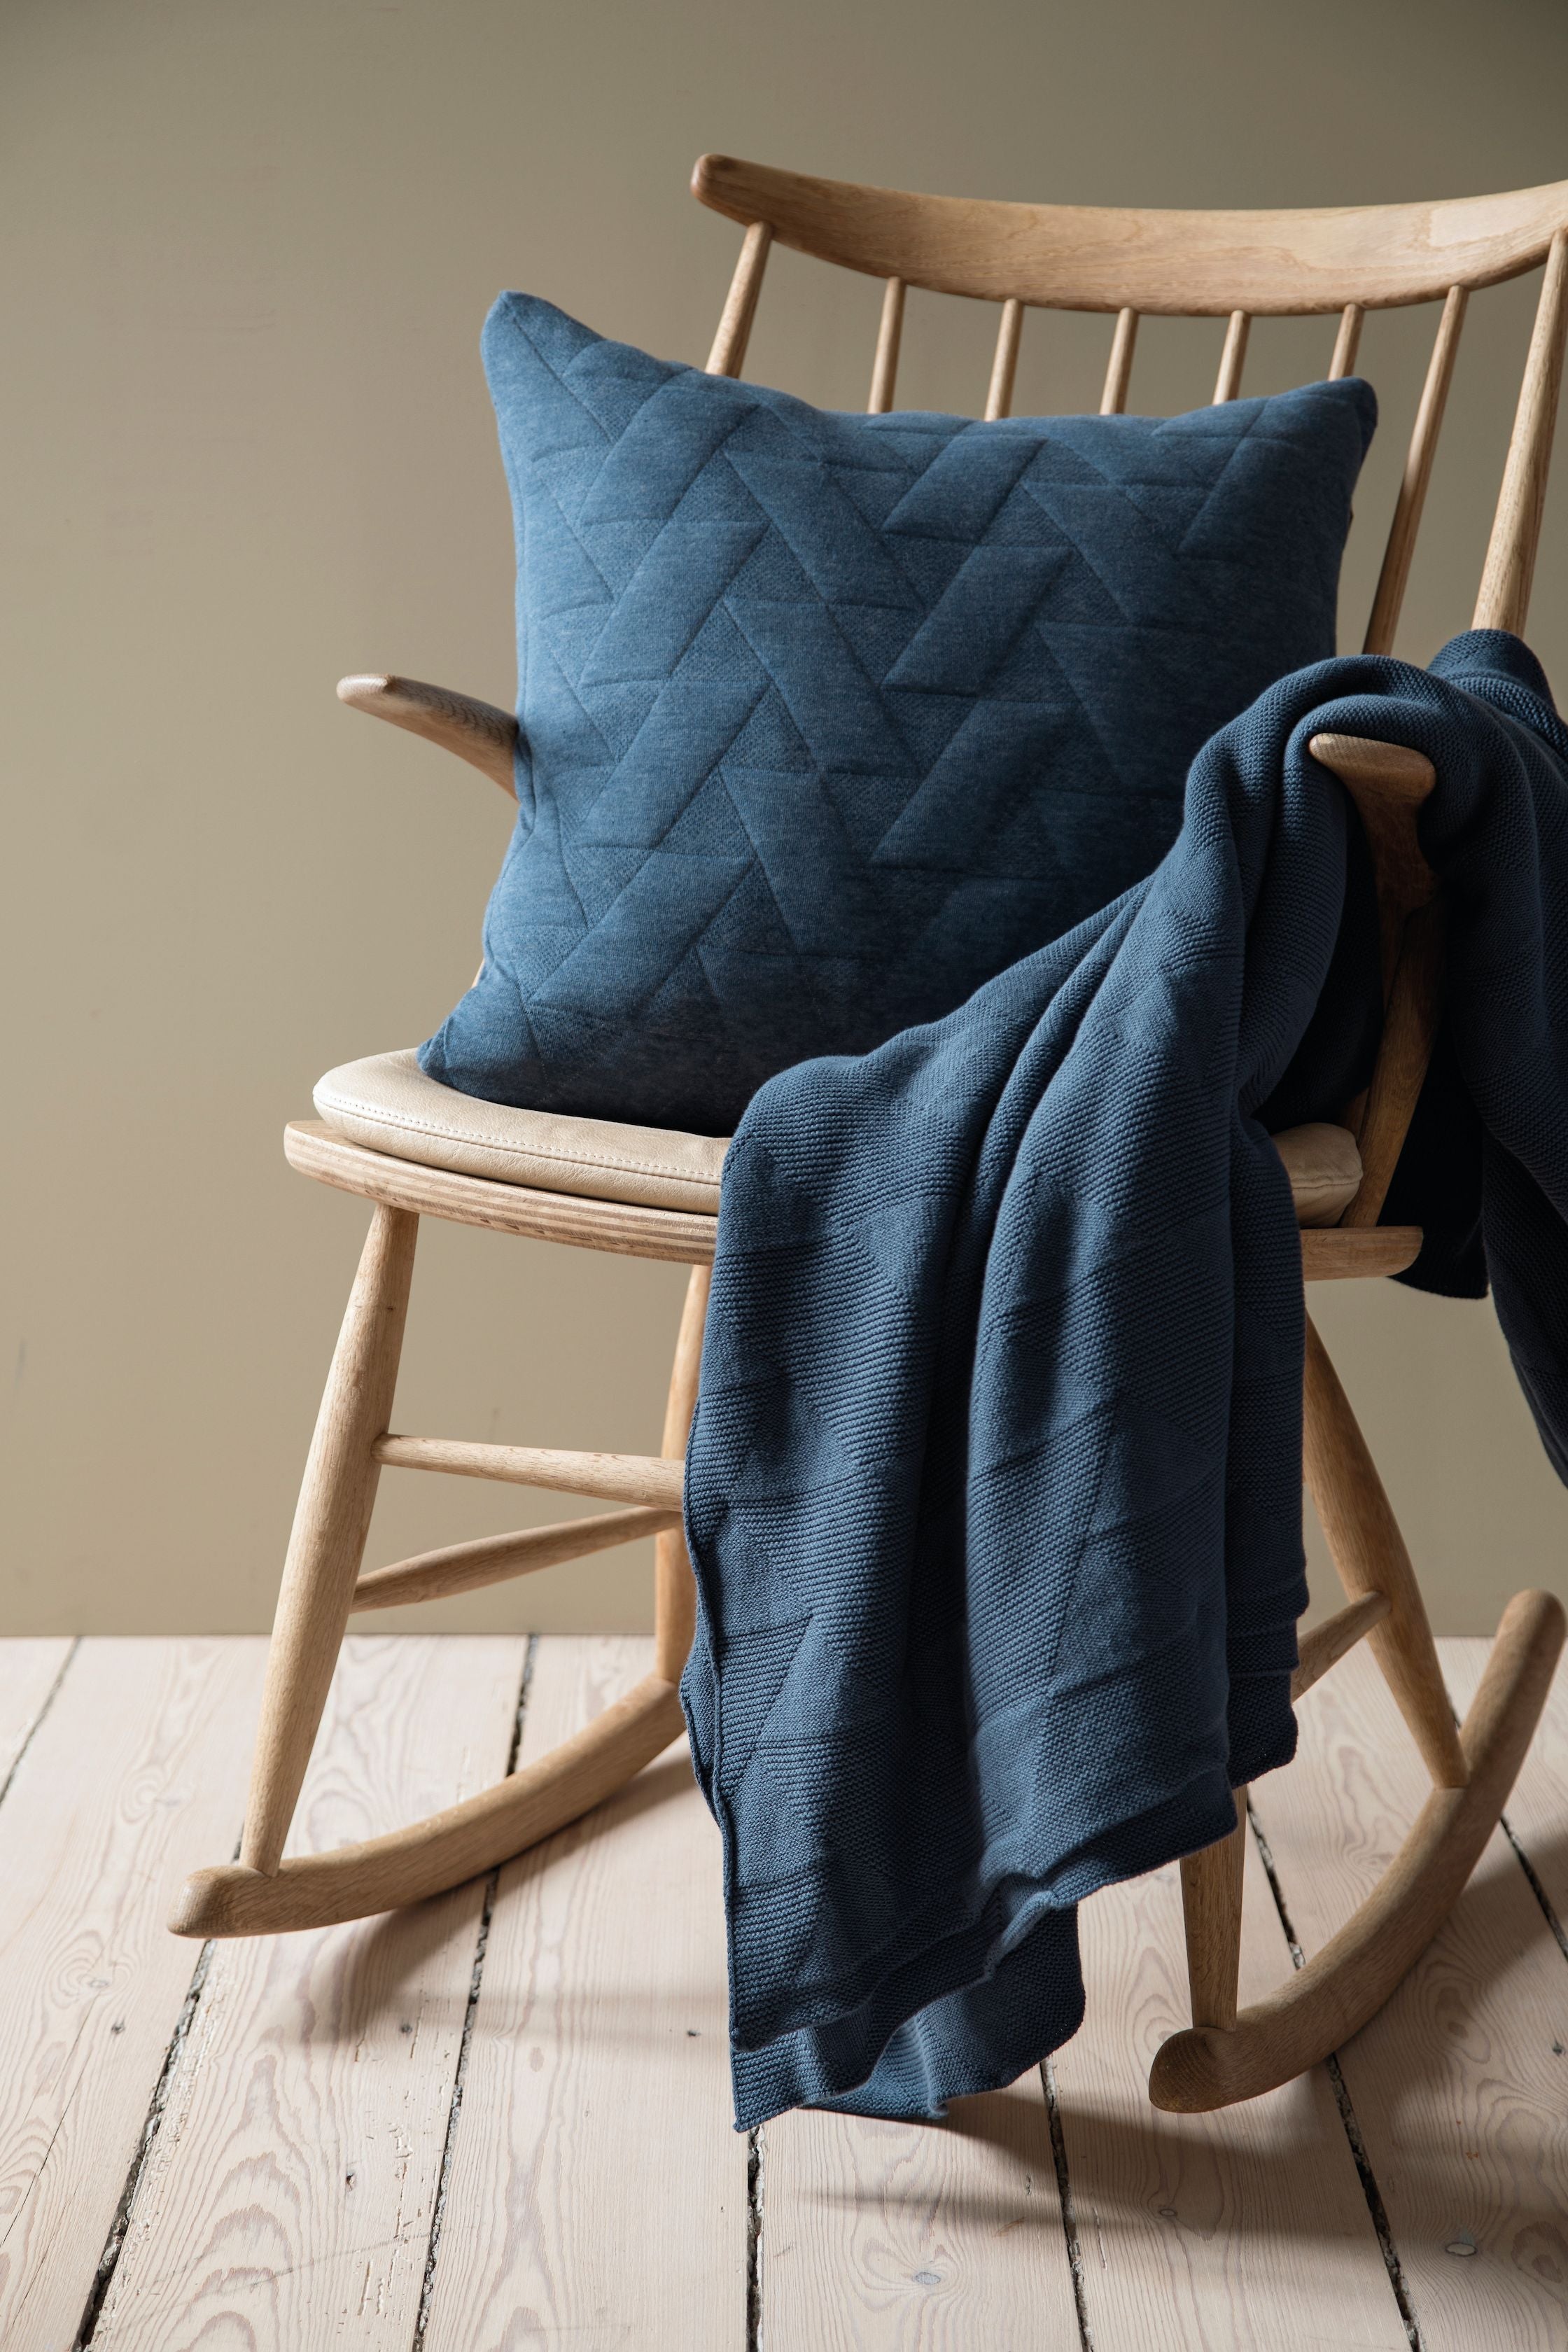 Architectmade Finn Juhl Pattern Blanket, Blue